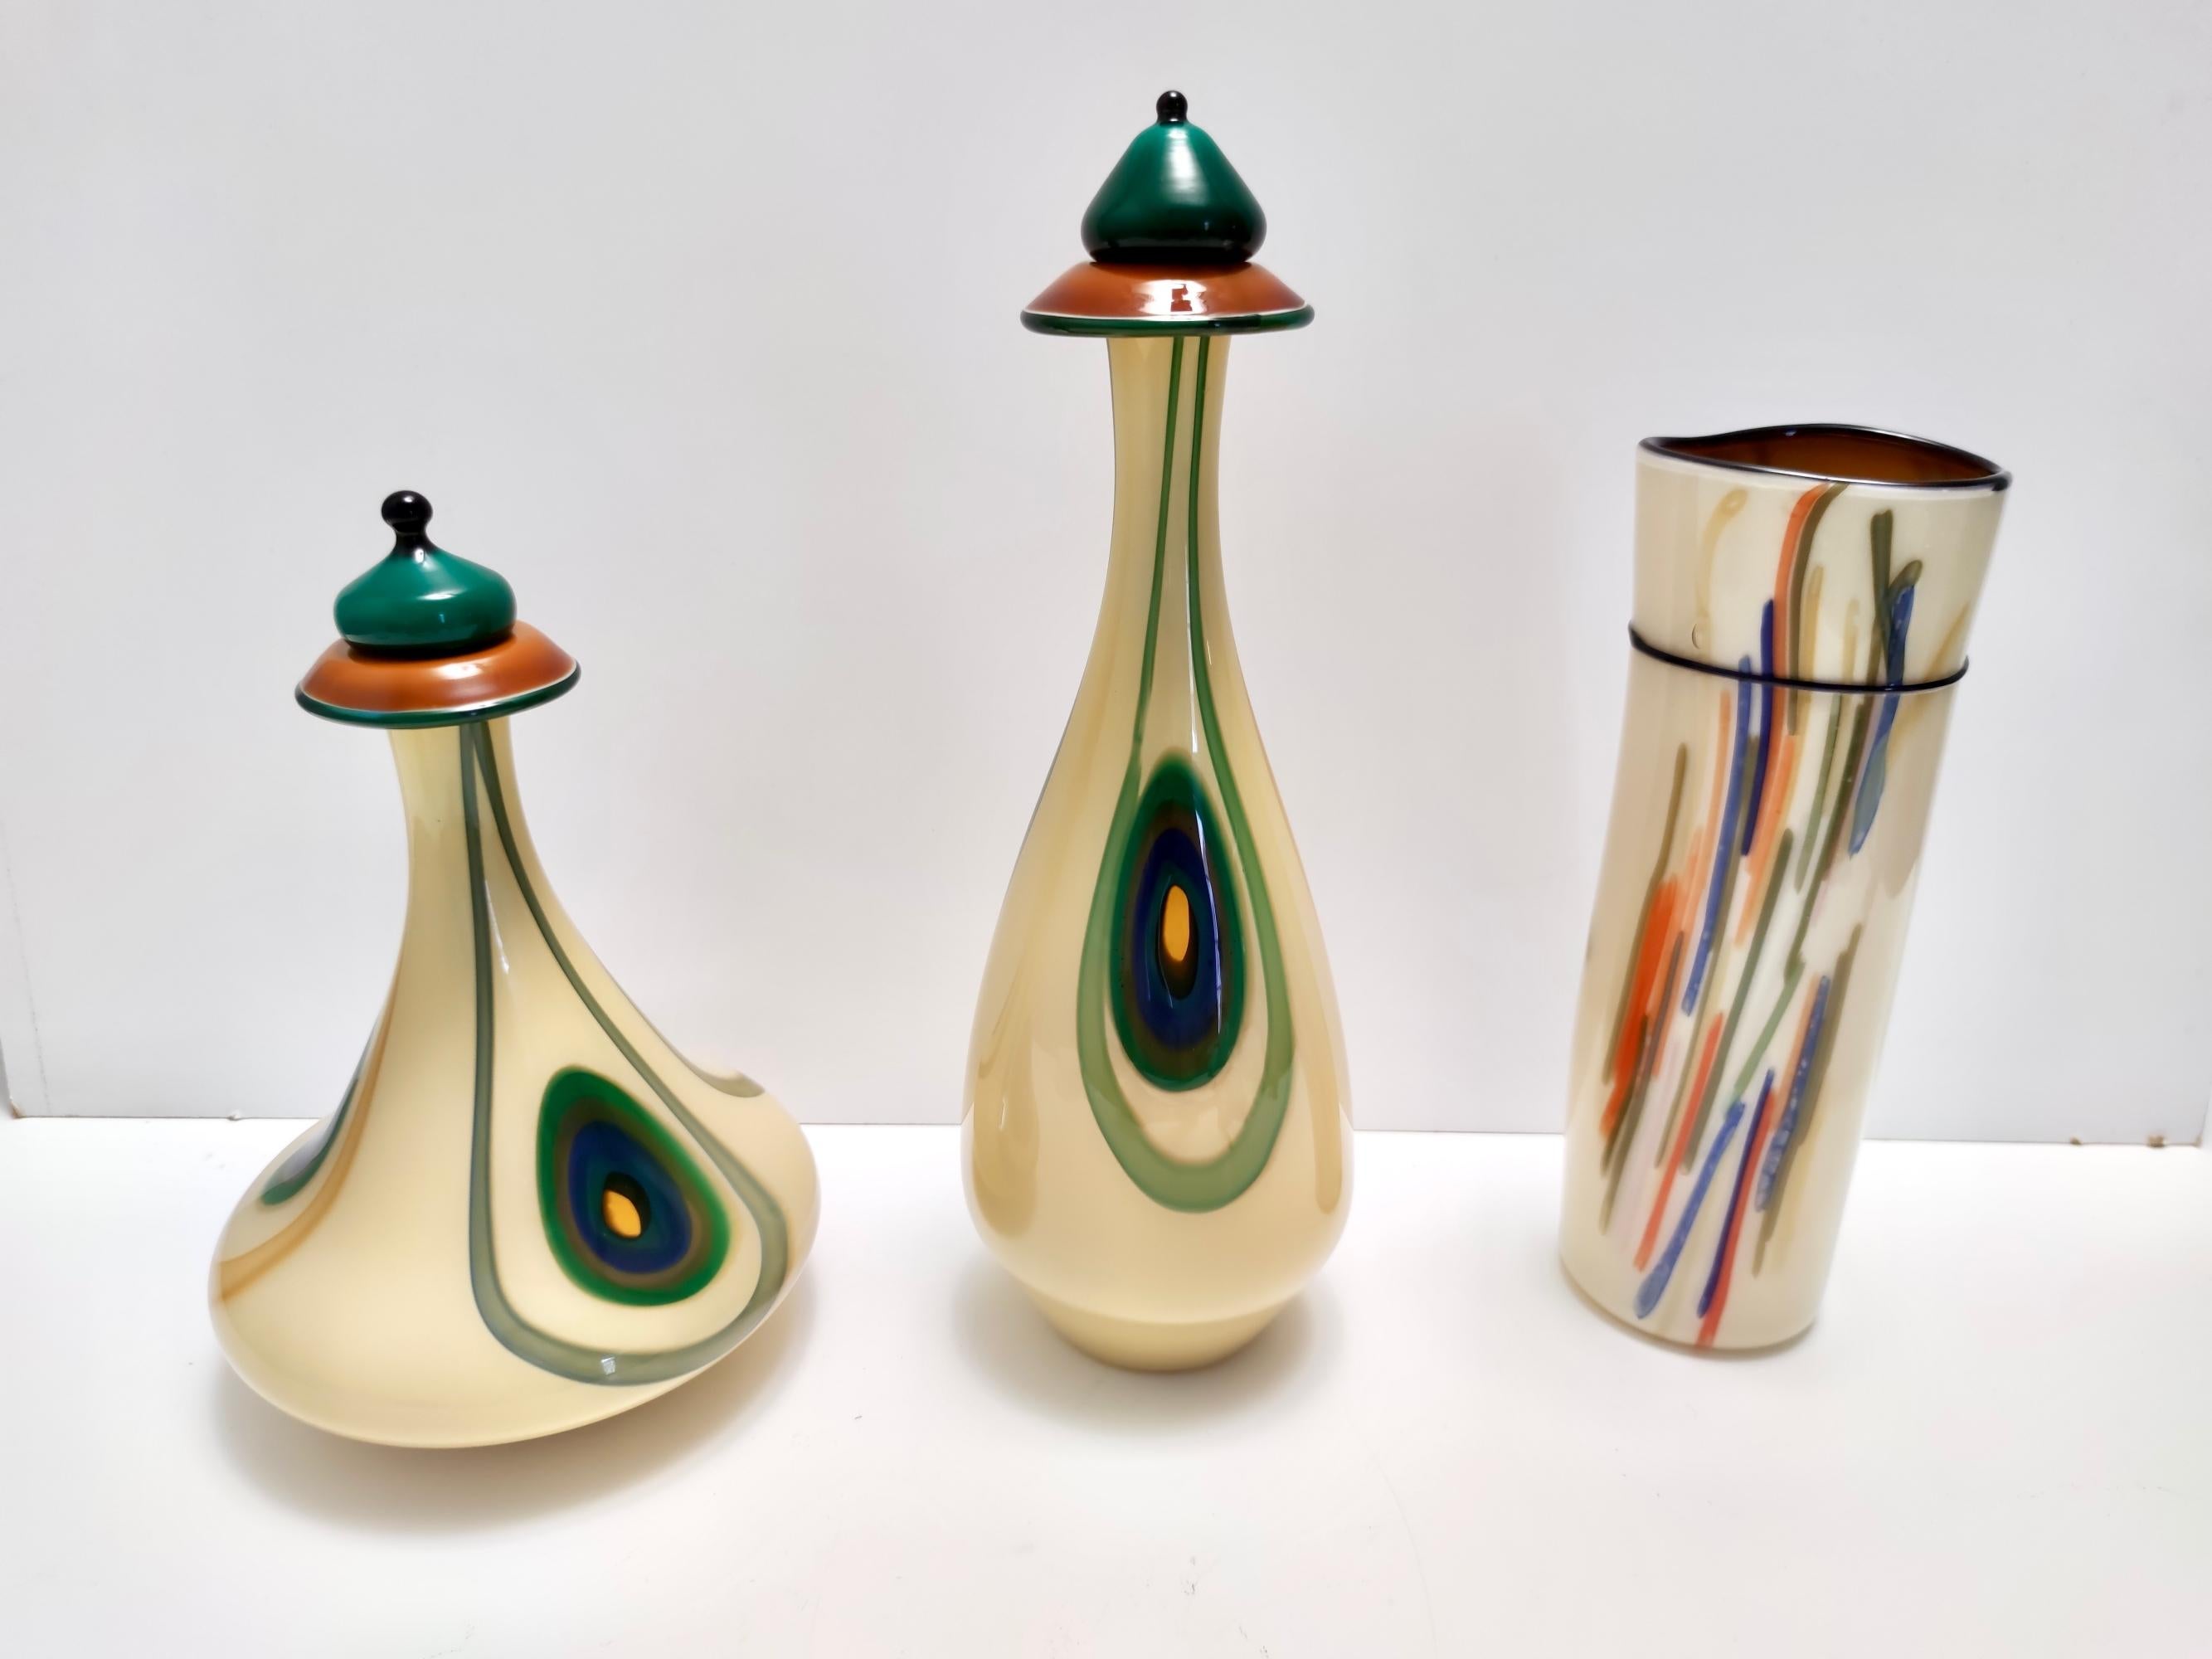 Hergestellt in Italien, 1960er - 1970er Jahre.
Diese Vase ist Teil eines dreiteiligen Sets. 
Sie ist aus ummanteltem Opalglas und mundgeblasenem Glas mit farbigen Stäben gefertigt.  
Da es sich um einen Vintage-Artikel handelt, kann er leichte